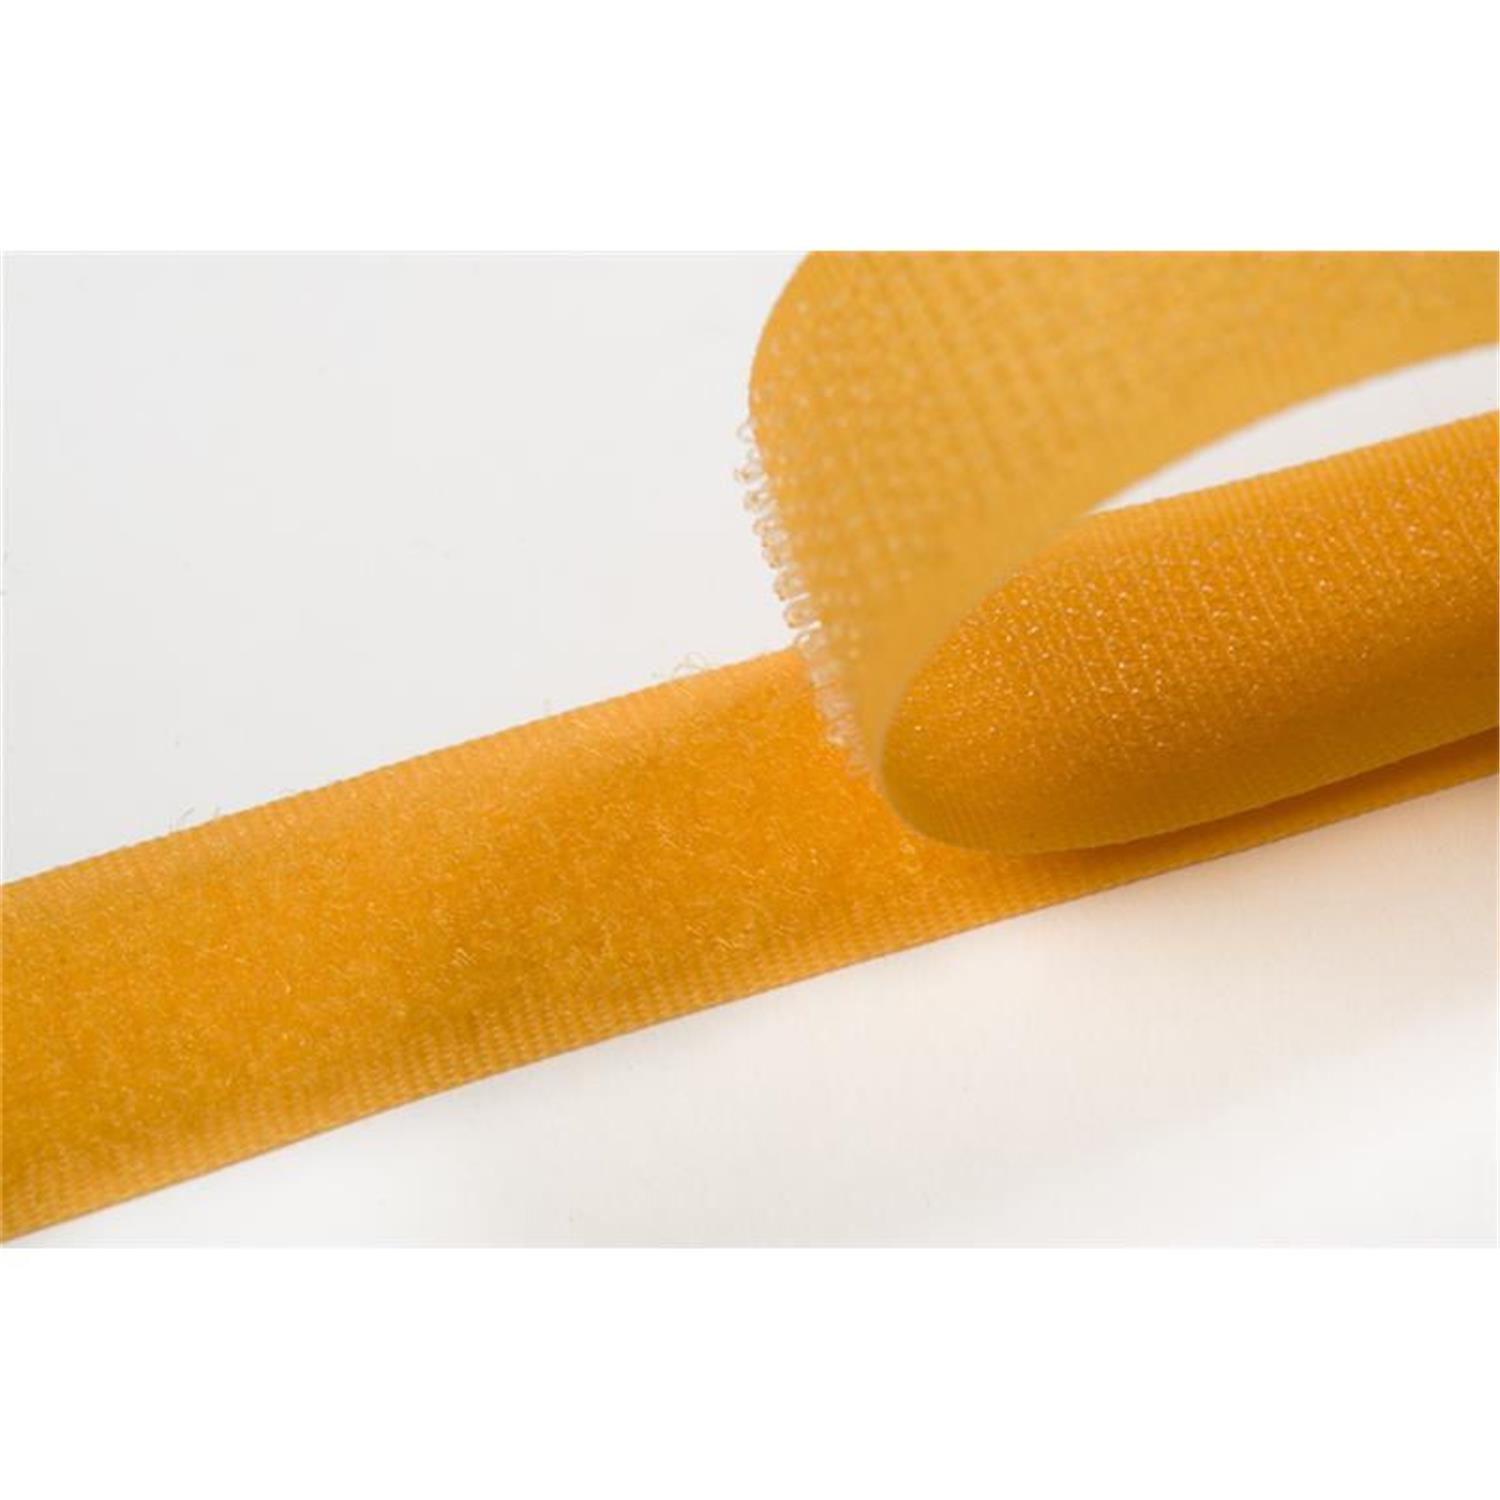 Klettband zum aufnähen, 38 mm, gelb #05 4 Meter